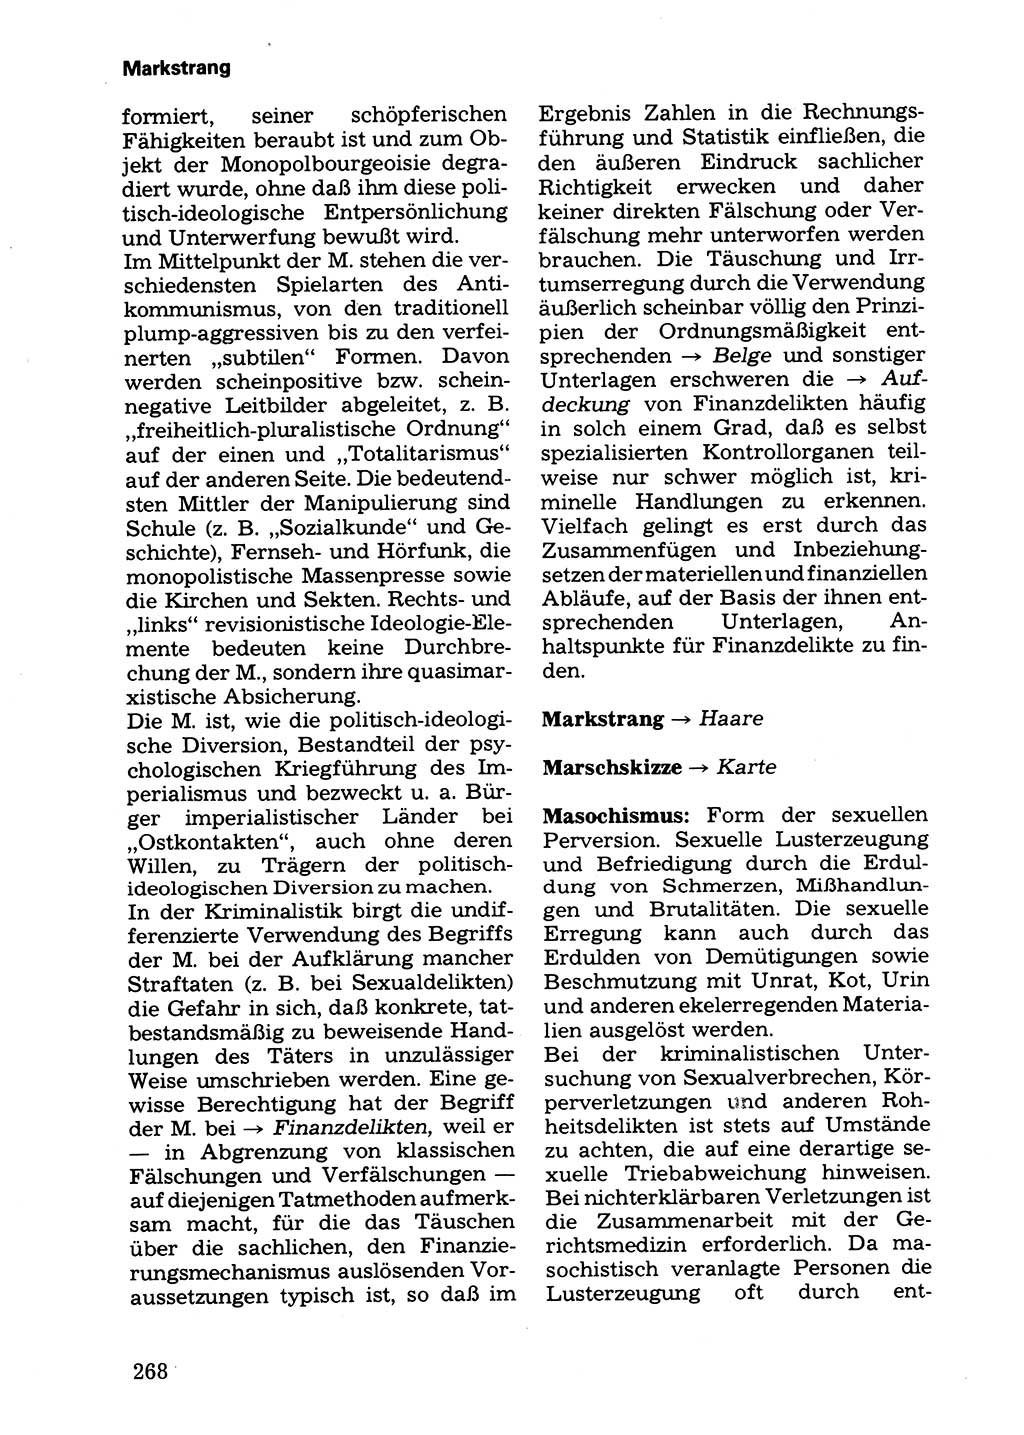 Wörterbuch der sozialistischen Kriminalistik [Deutsche Demokratische Republik (DDR)] 1981, Seite 268 (Wb. soz. Krim. DDR 1981, S. 268)